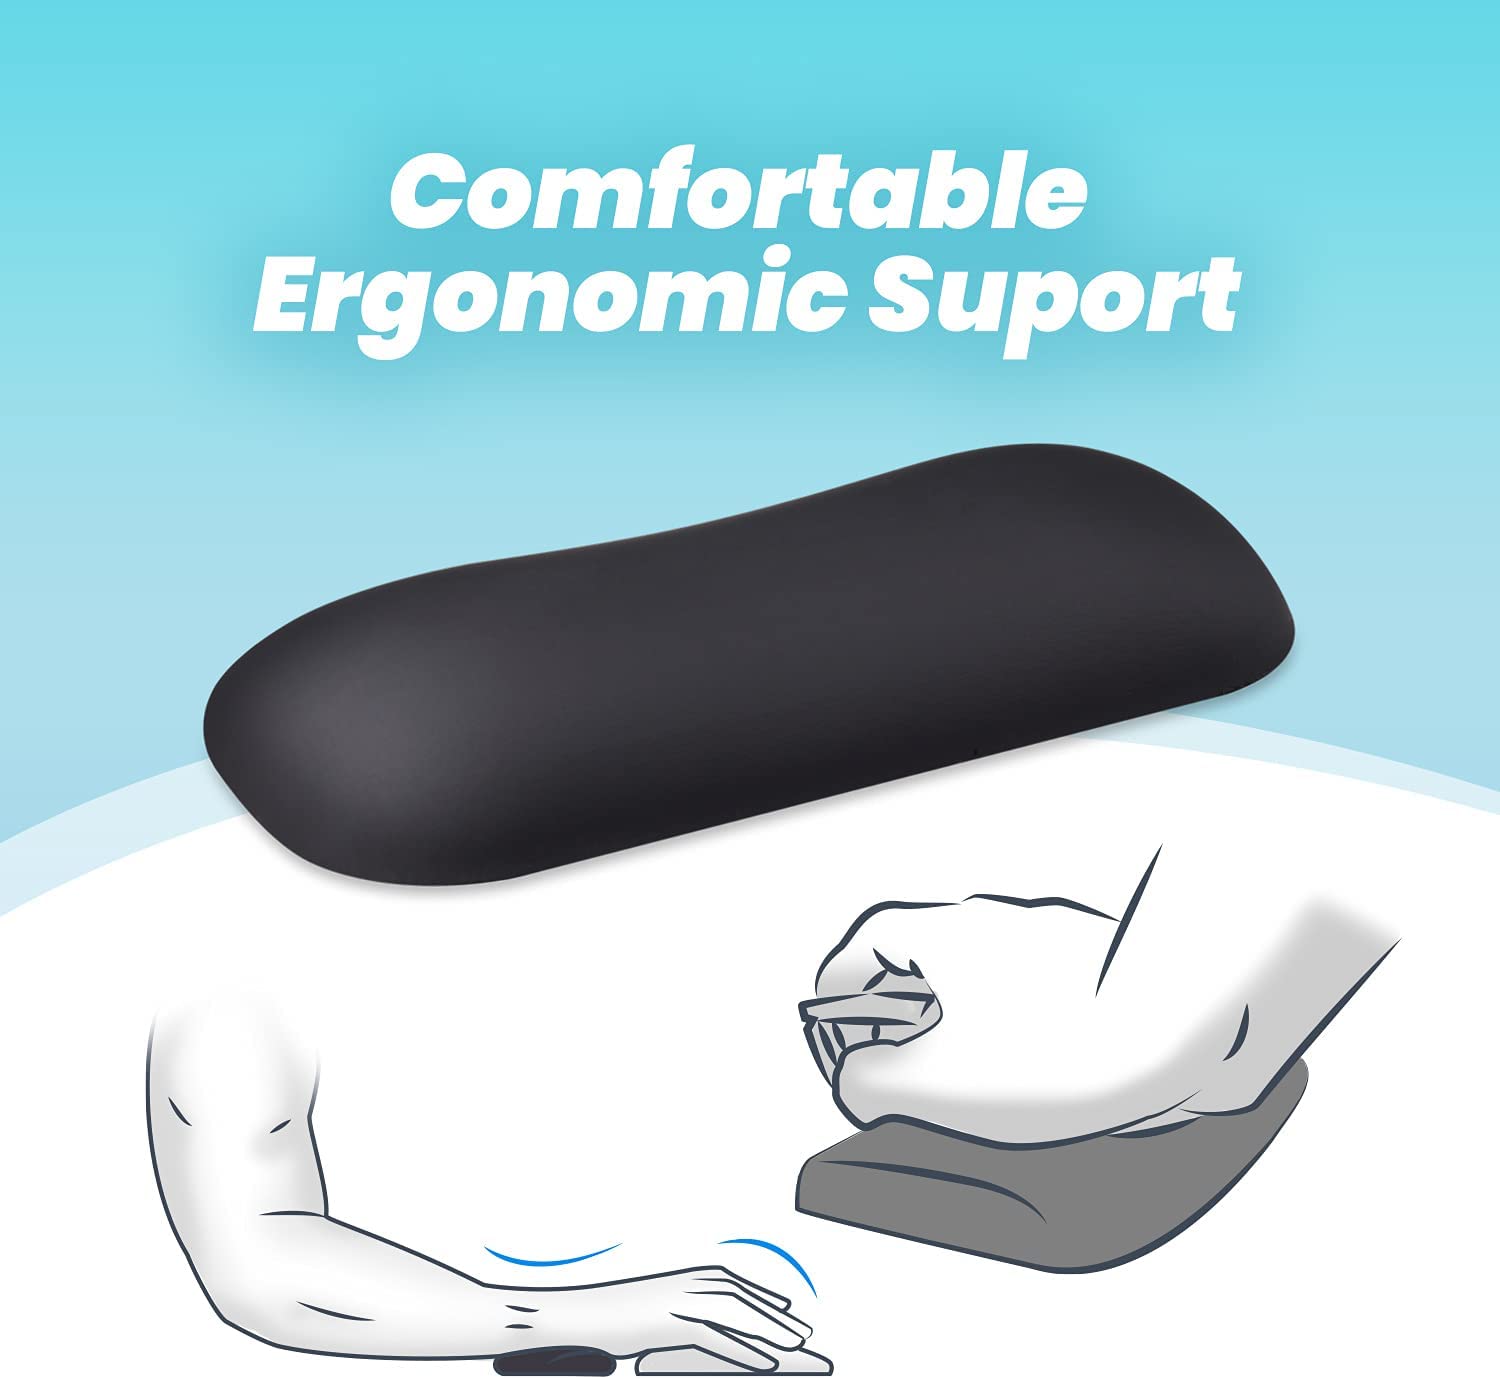 矽膠滑鼠護腕 電腦滑鼠護腕墊 減輕壓力 軟墊 舒壓 保護手腕 護腕